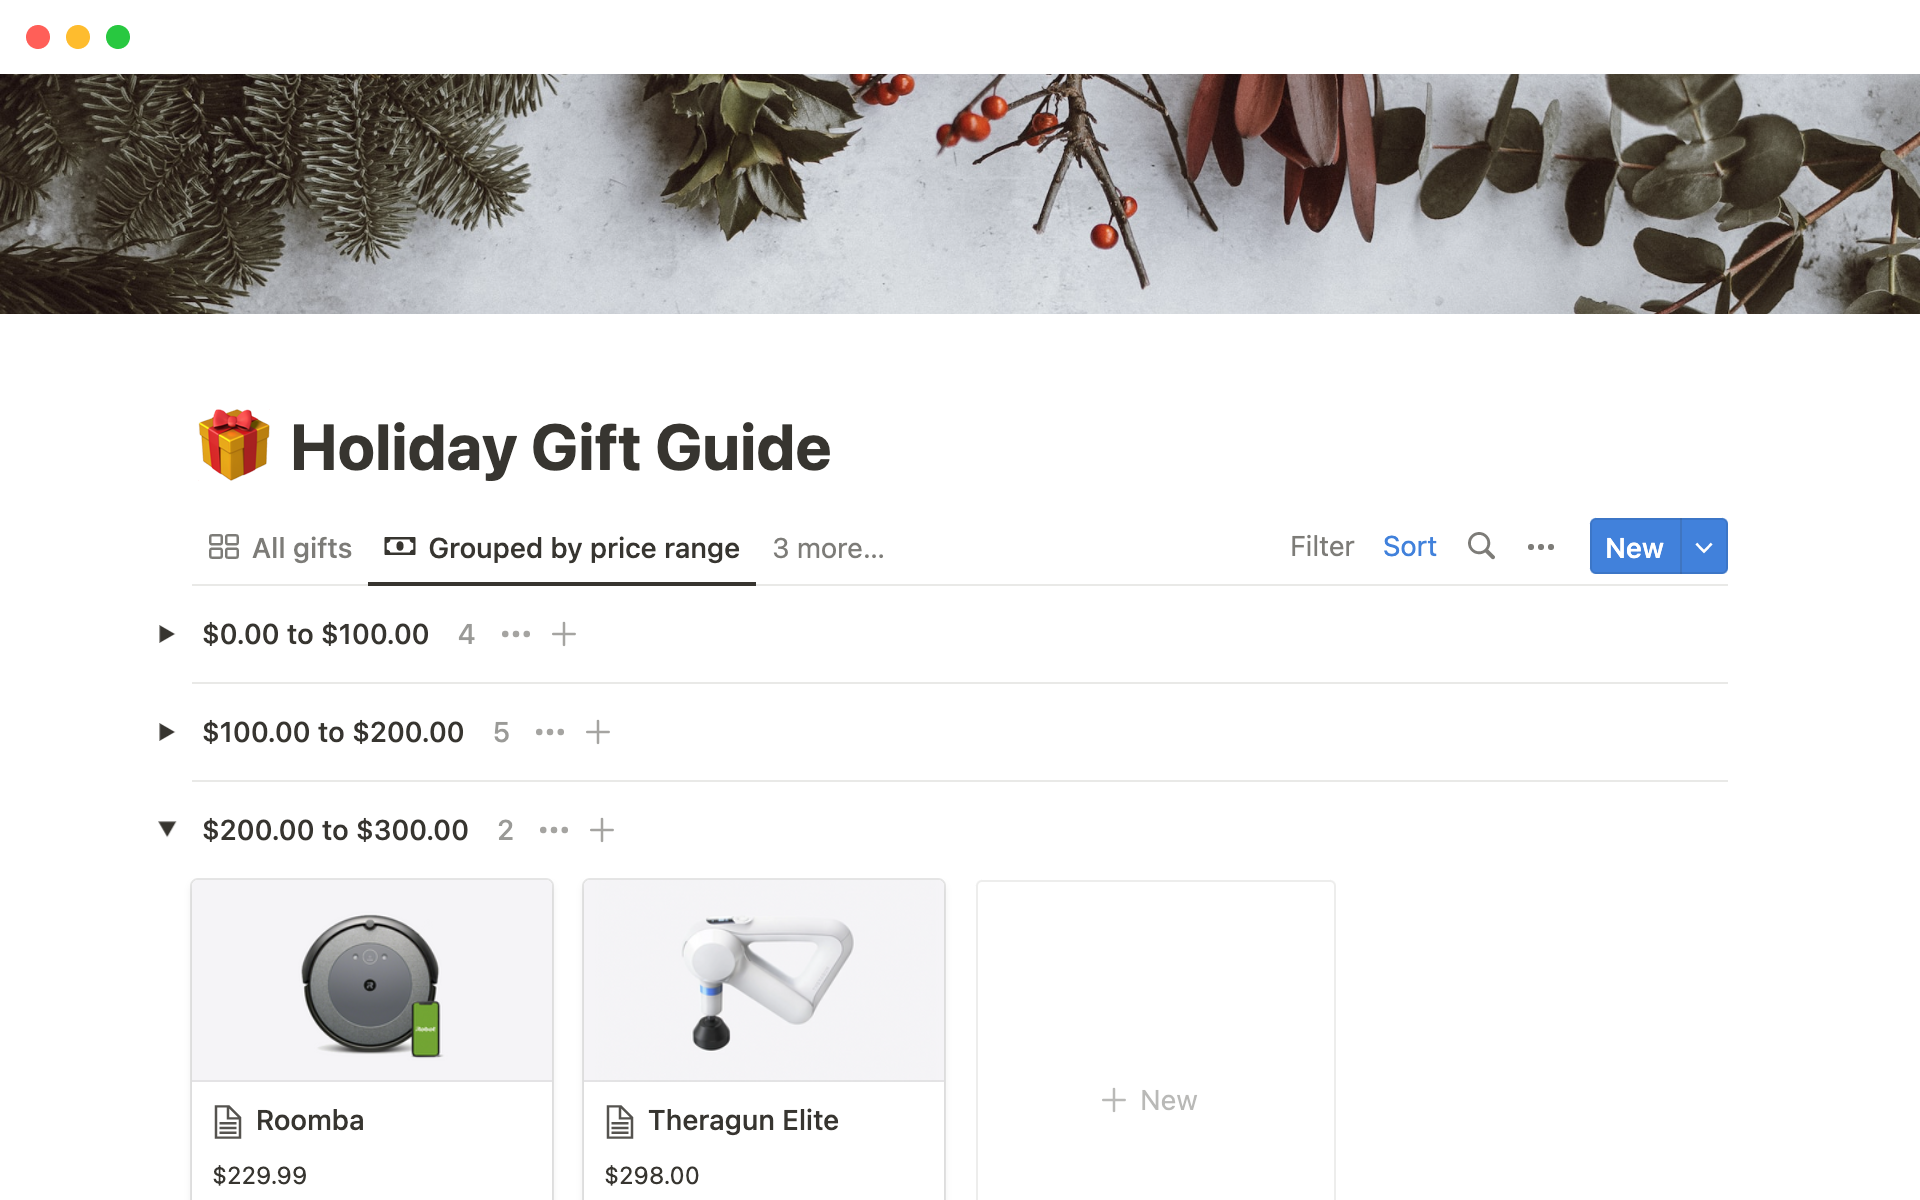 Agrega todas tus ideas de regalos junto con sus enlaces, imágenes, precios y tipo de destinatario en una única base de datos pública.